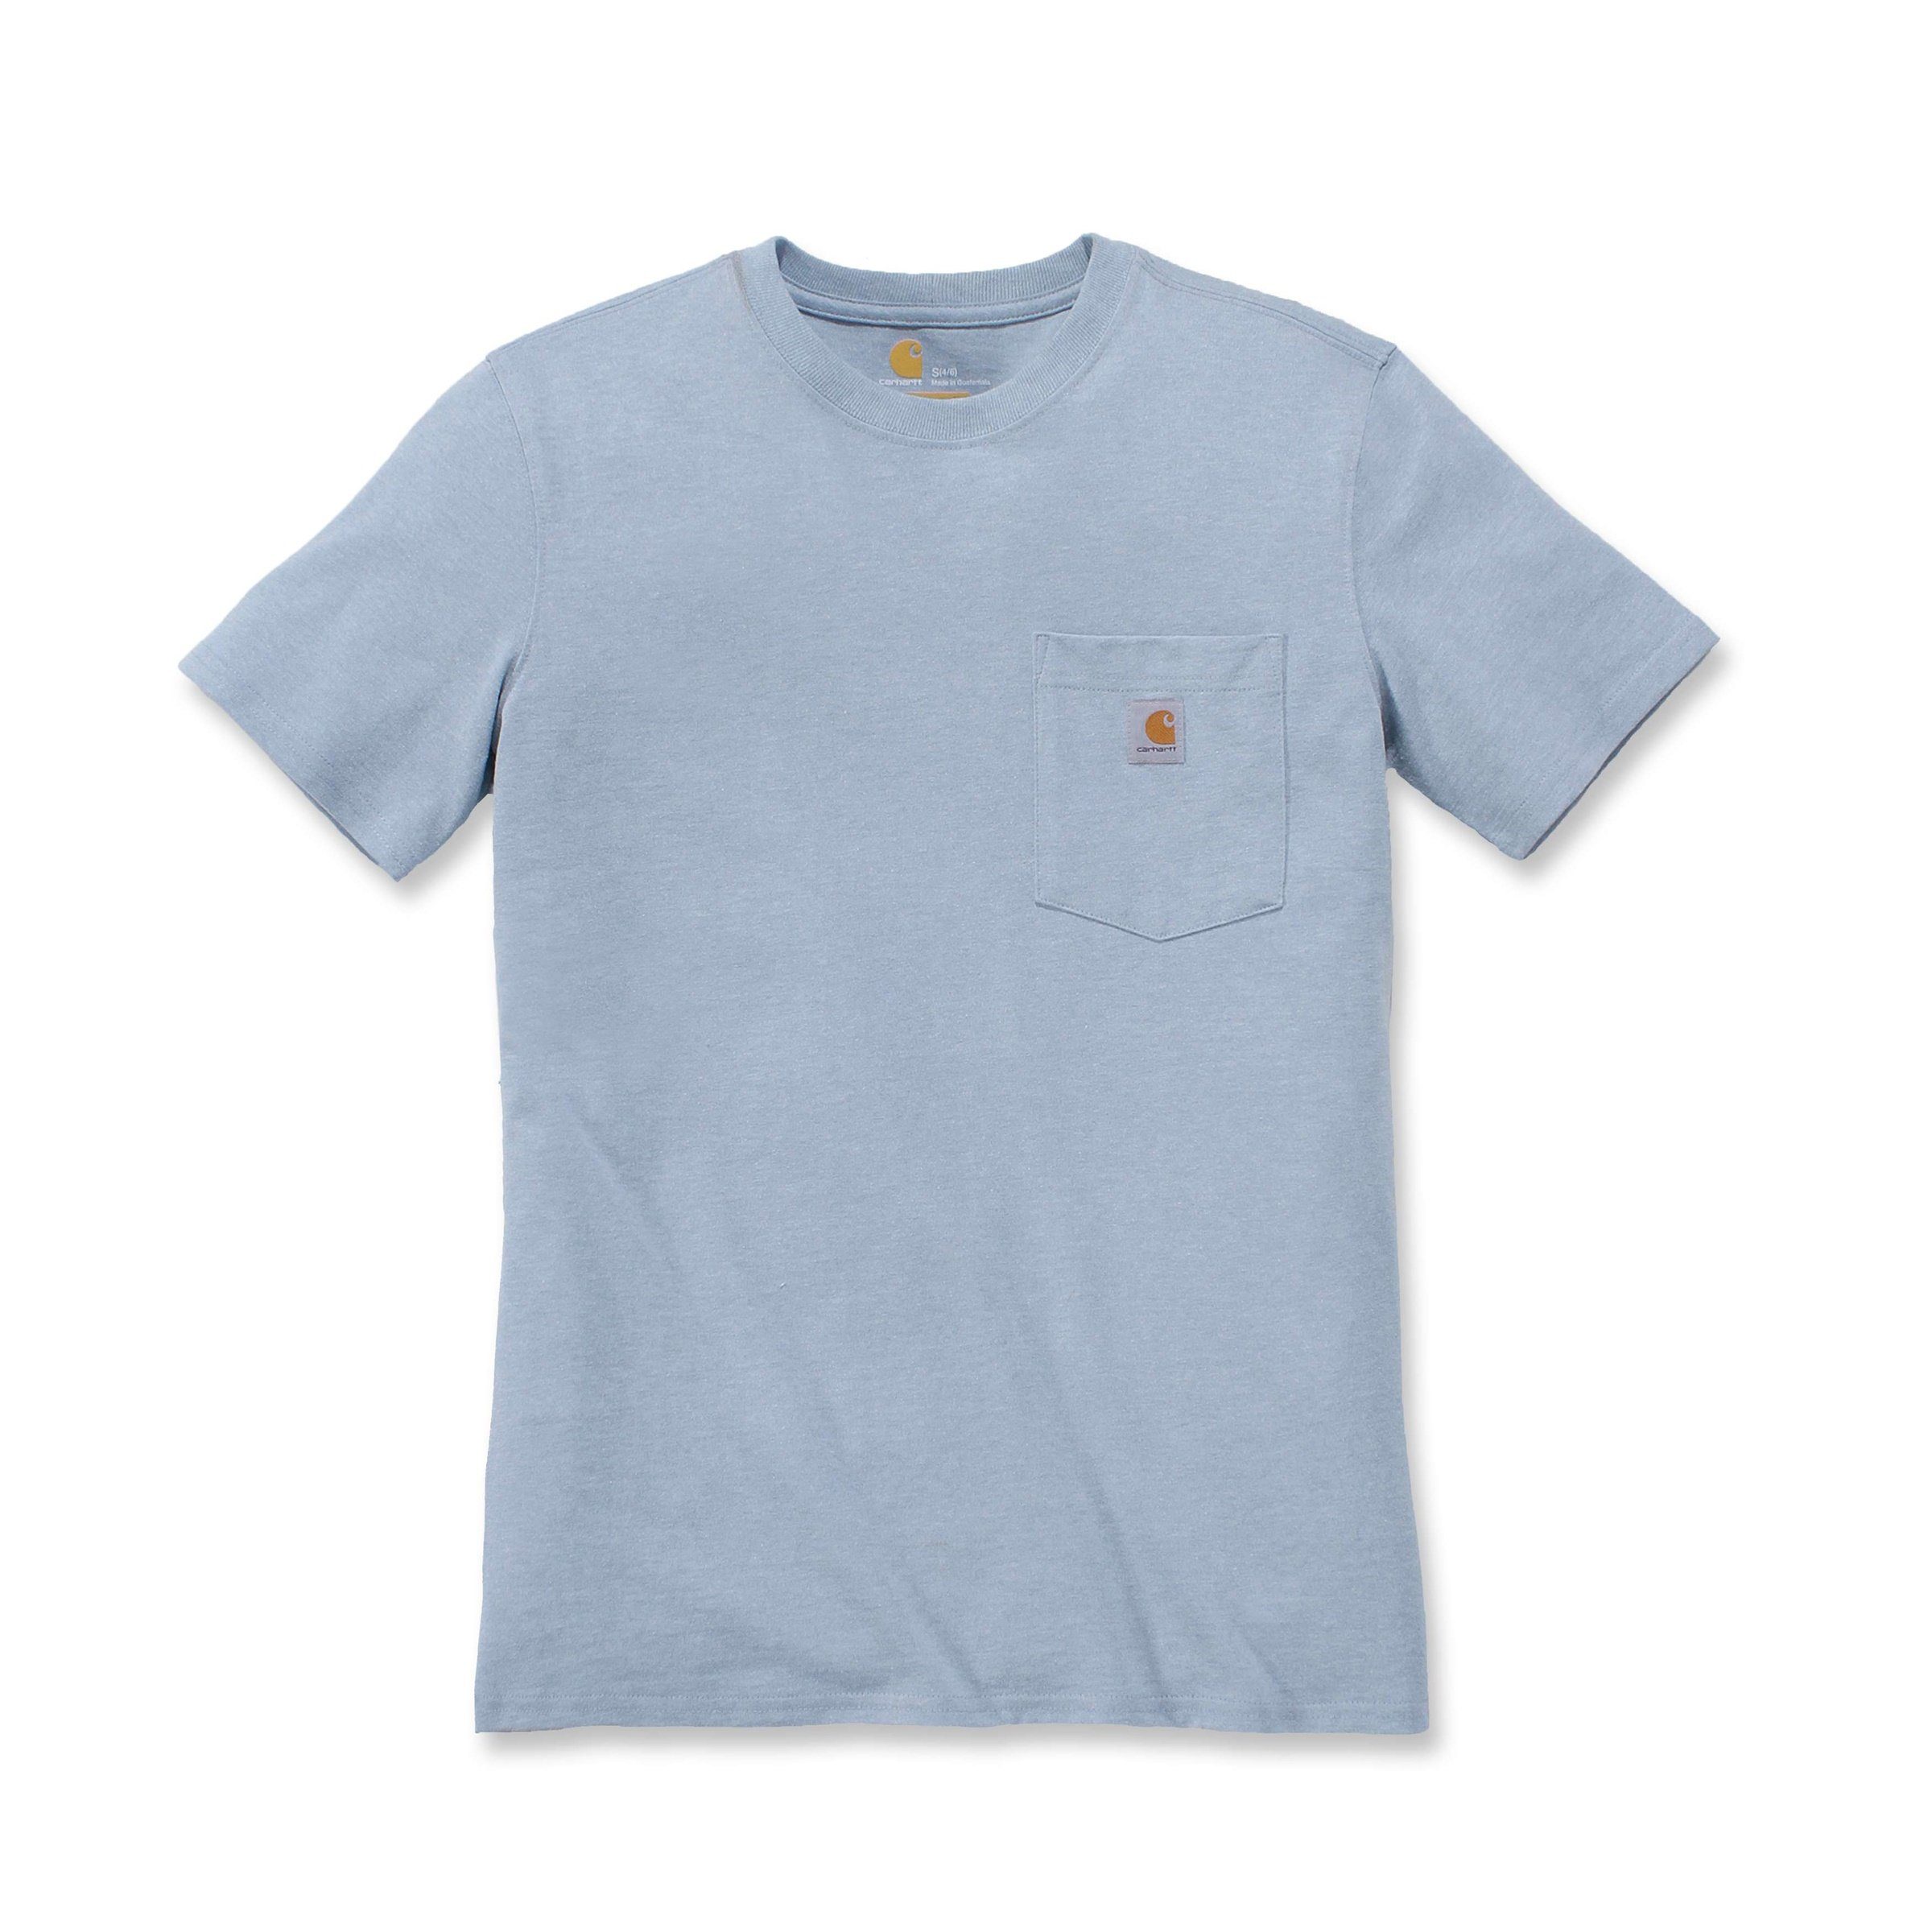 Carhartt Heavyweight T-Shirt heather lavender Damen soft Fit Pocket Adult Short-Sleeve Loose T-Shirt Carhartt